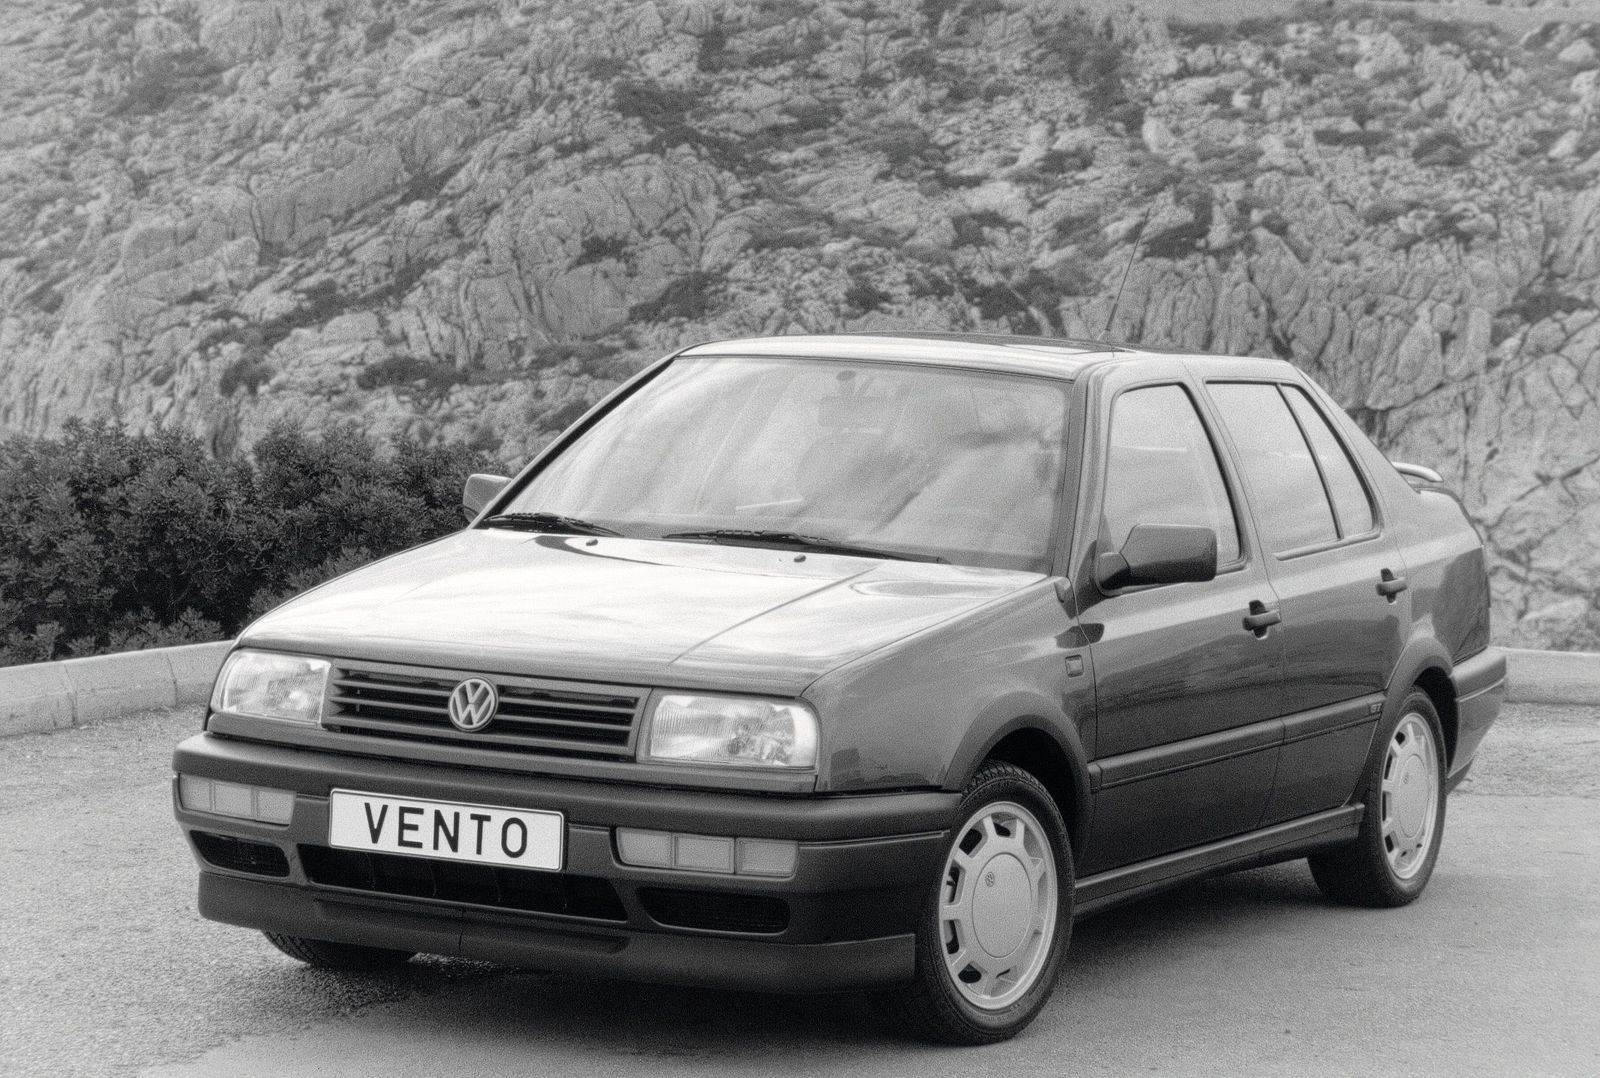 Vento (1992)